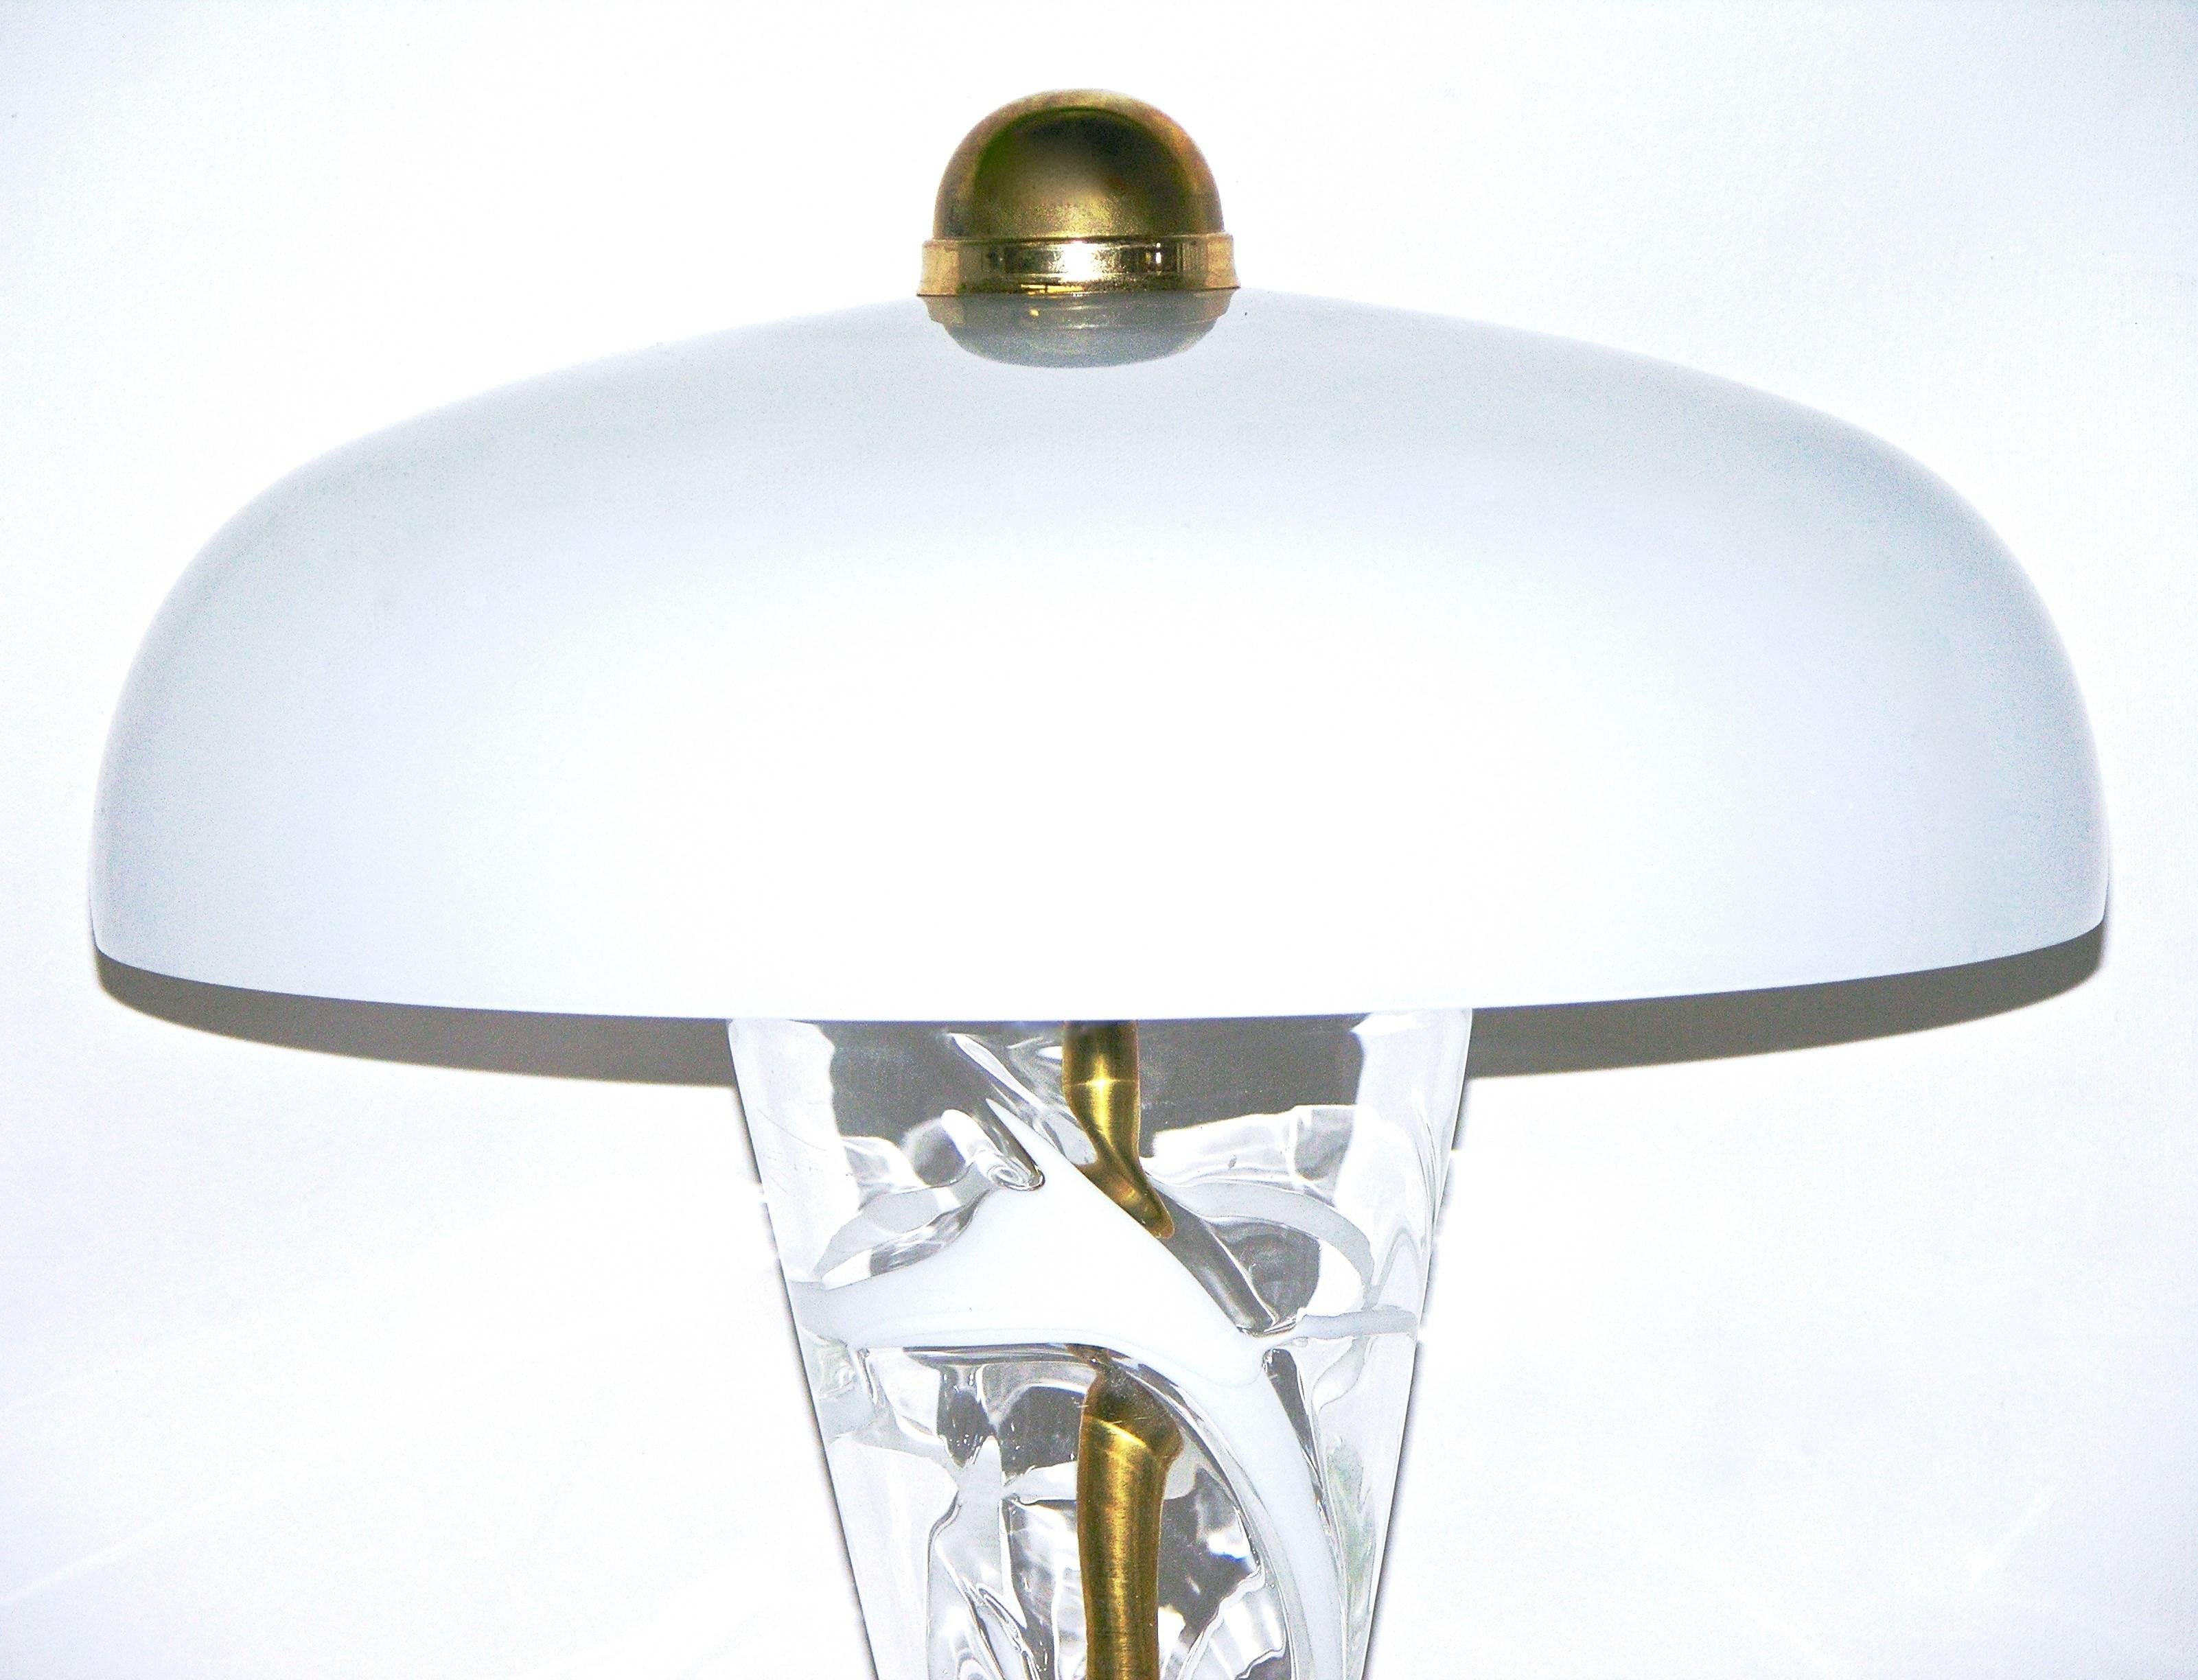 einzigartige italienische Muranoglaslampe aus den 1970er Jahren, die Vistosi zugeschrieben wird, handgefertigt aus Messing mit exklusiven Elementen aus geblasenem Muranoglas. Sehr hohe Qualität der Konstruktion und Aufmerksamkeit für Designdetails,